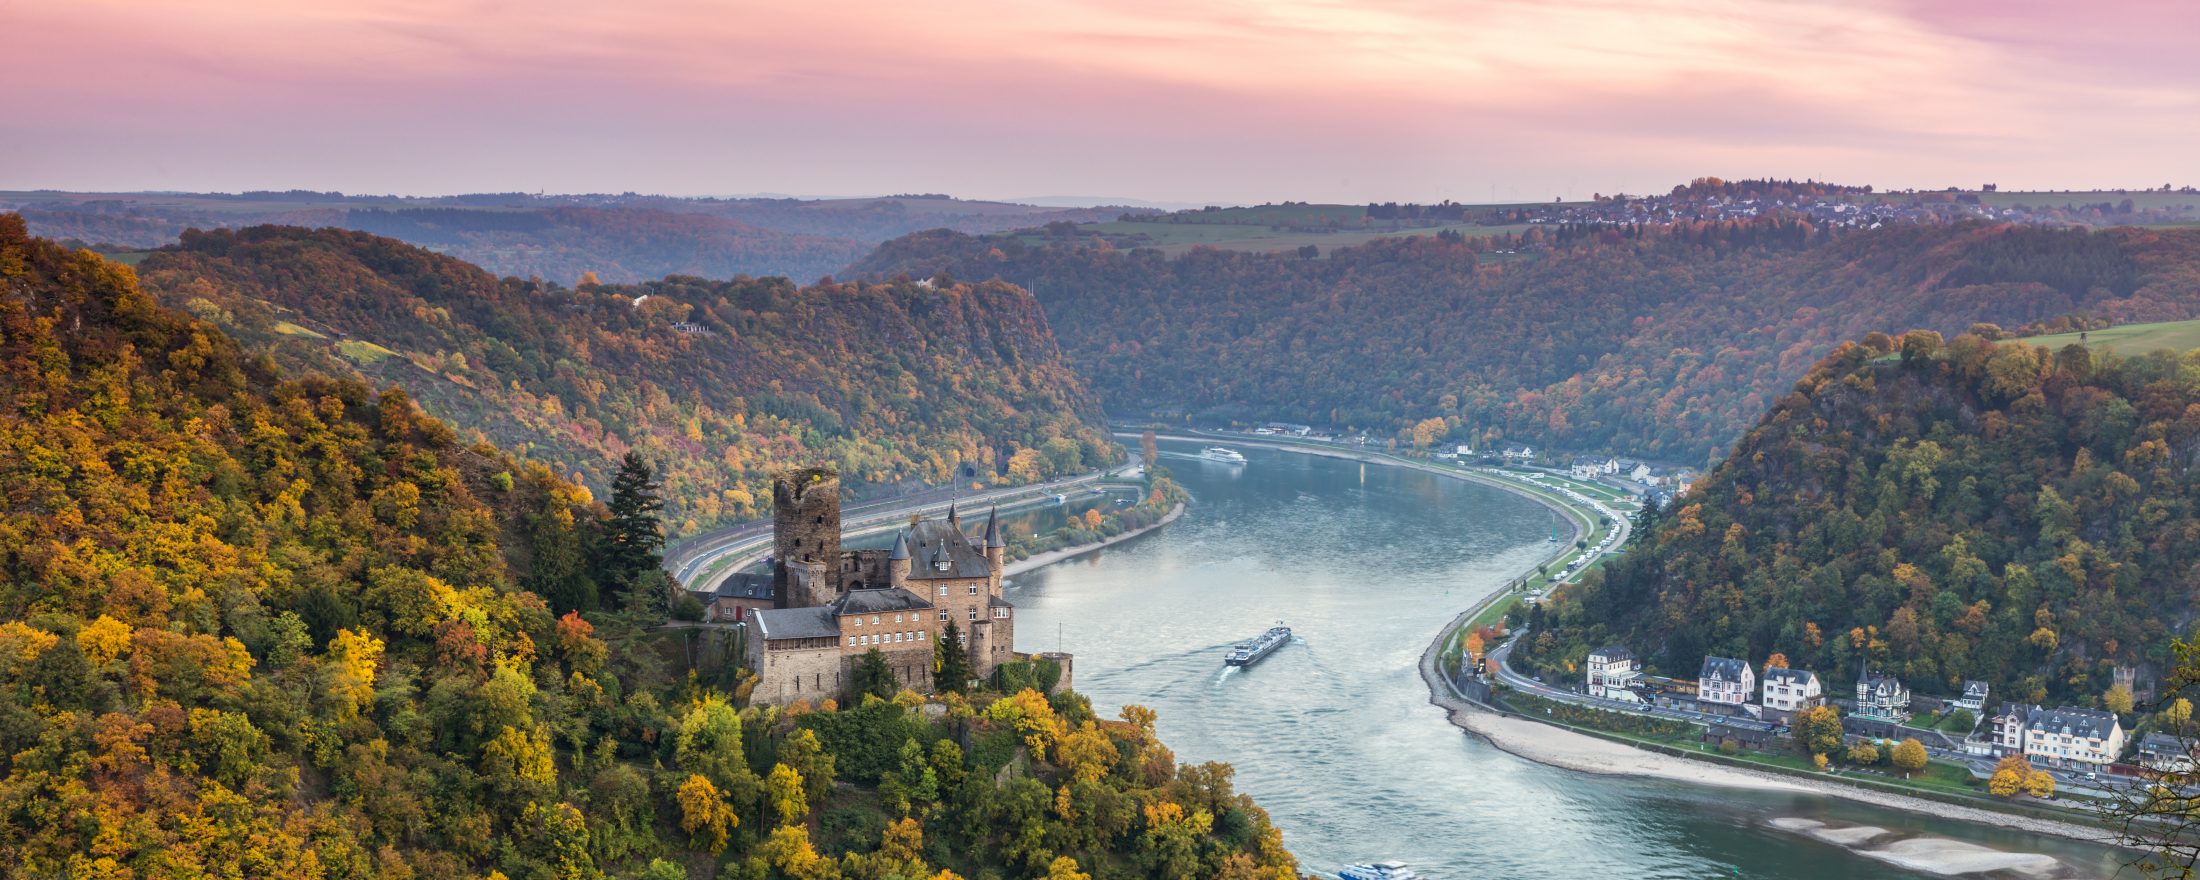 اهم 3 ميزات في نهر الراين سويسرا